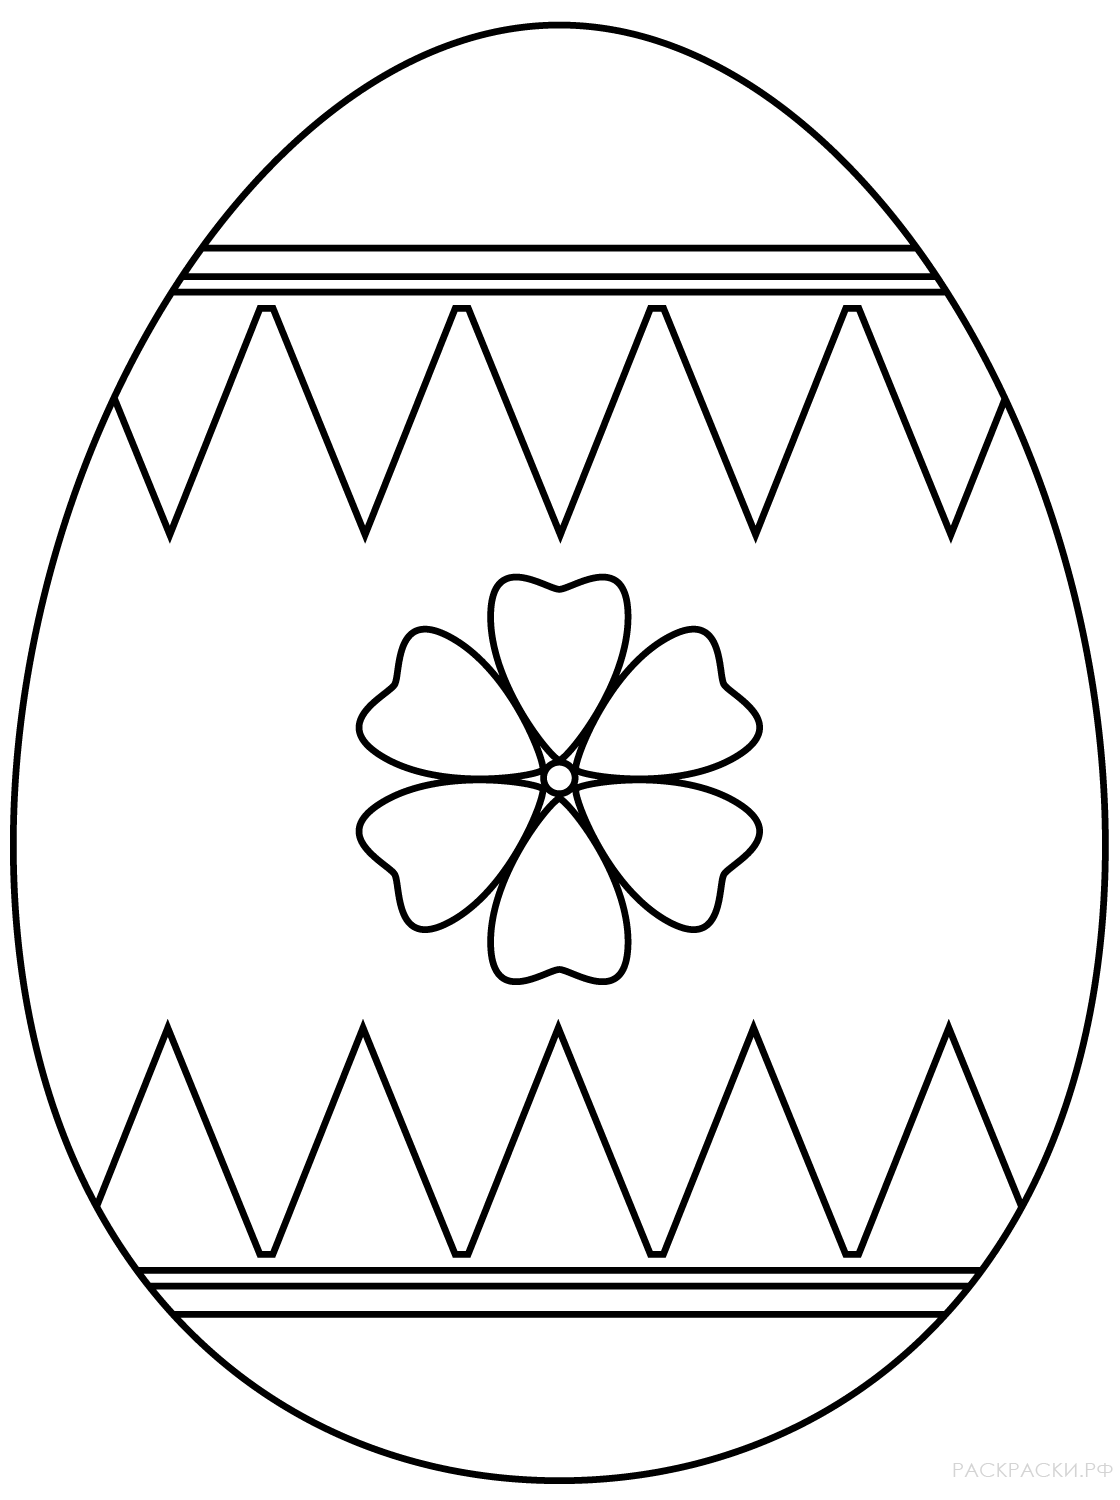 Пасхальное яйцо рисунок для детей. Пасхальные яйца писанки раскраски. Раскраски пасочных яиц. Пасхальное яйцо раскраска для детей. Раскраски яйца на Пасху для детей.